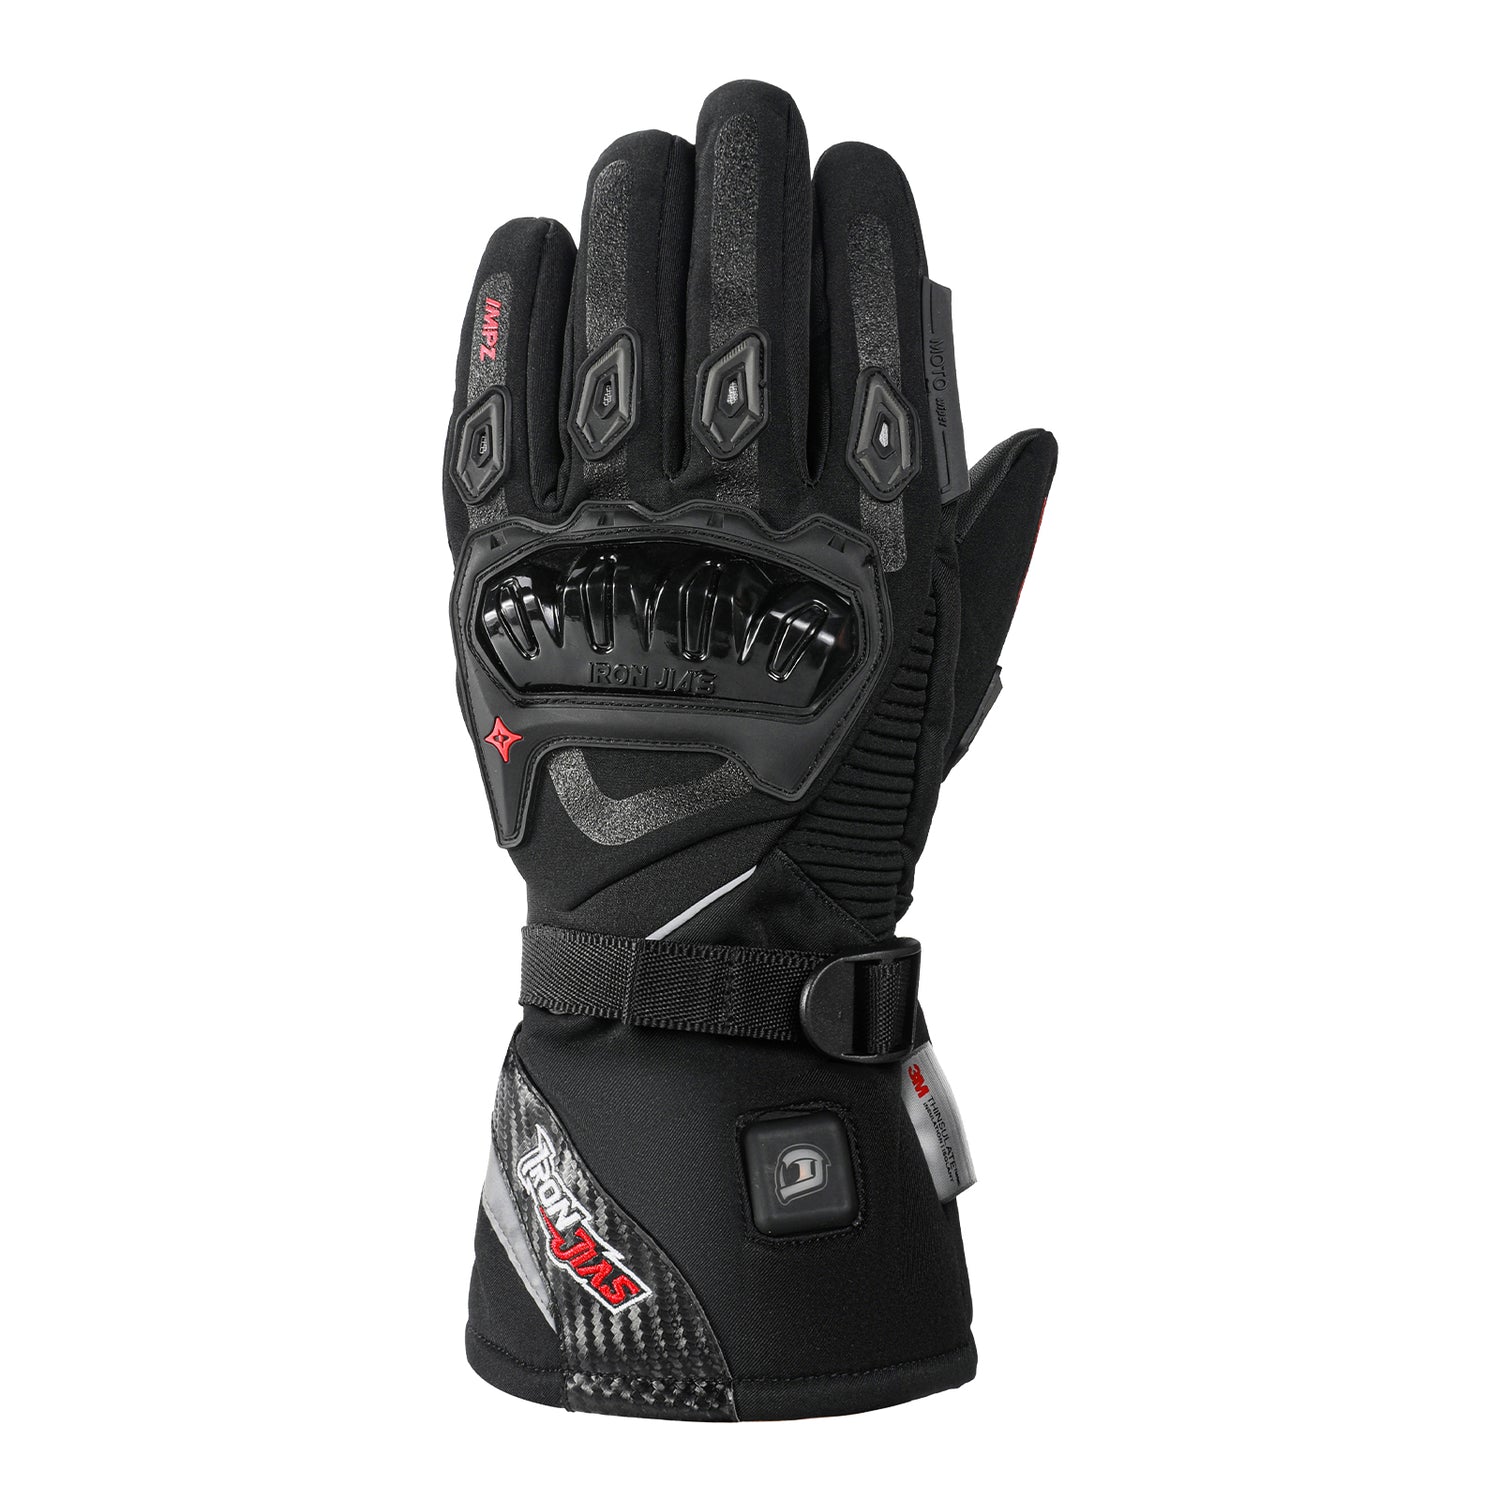 Black Waterproof Heated Motorcycle Gloves